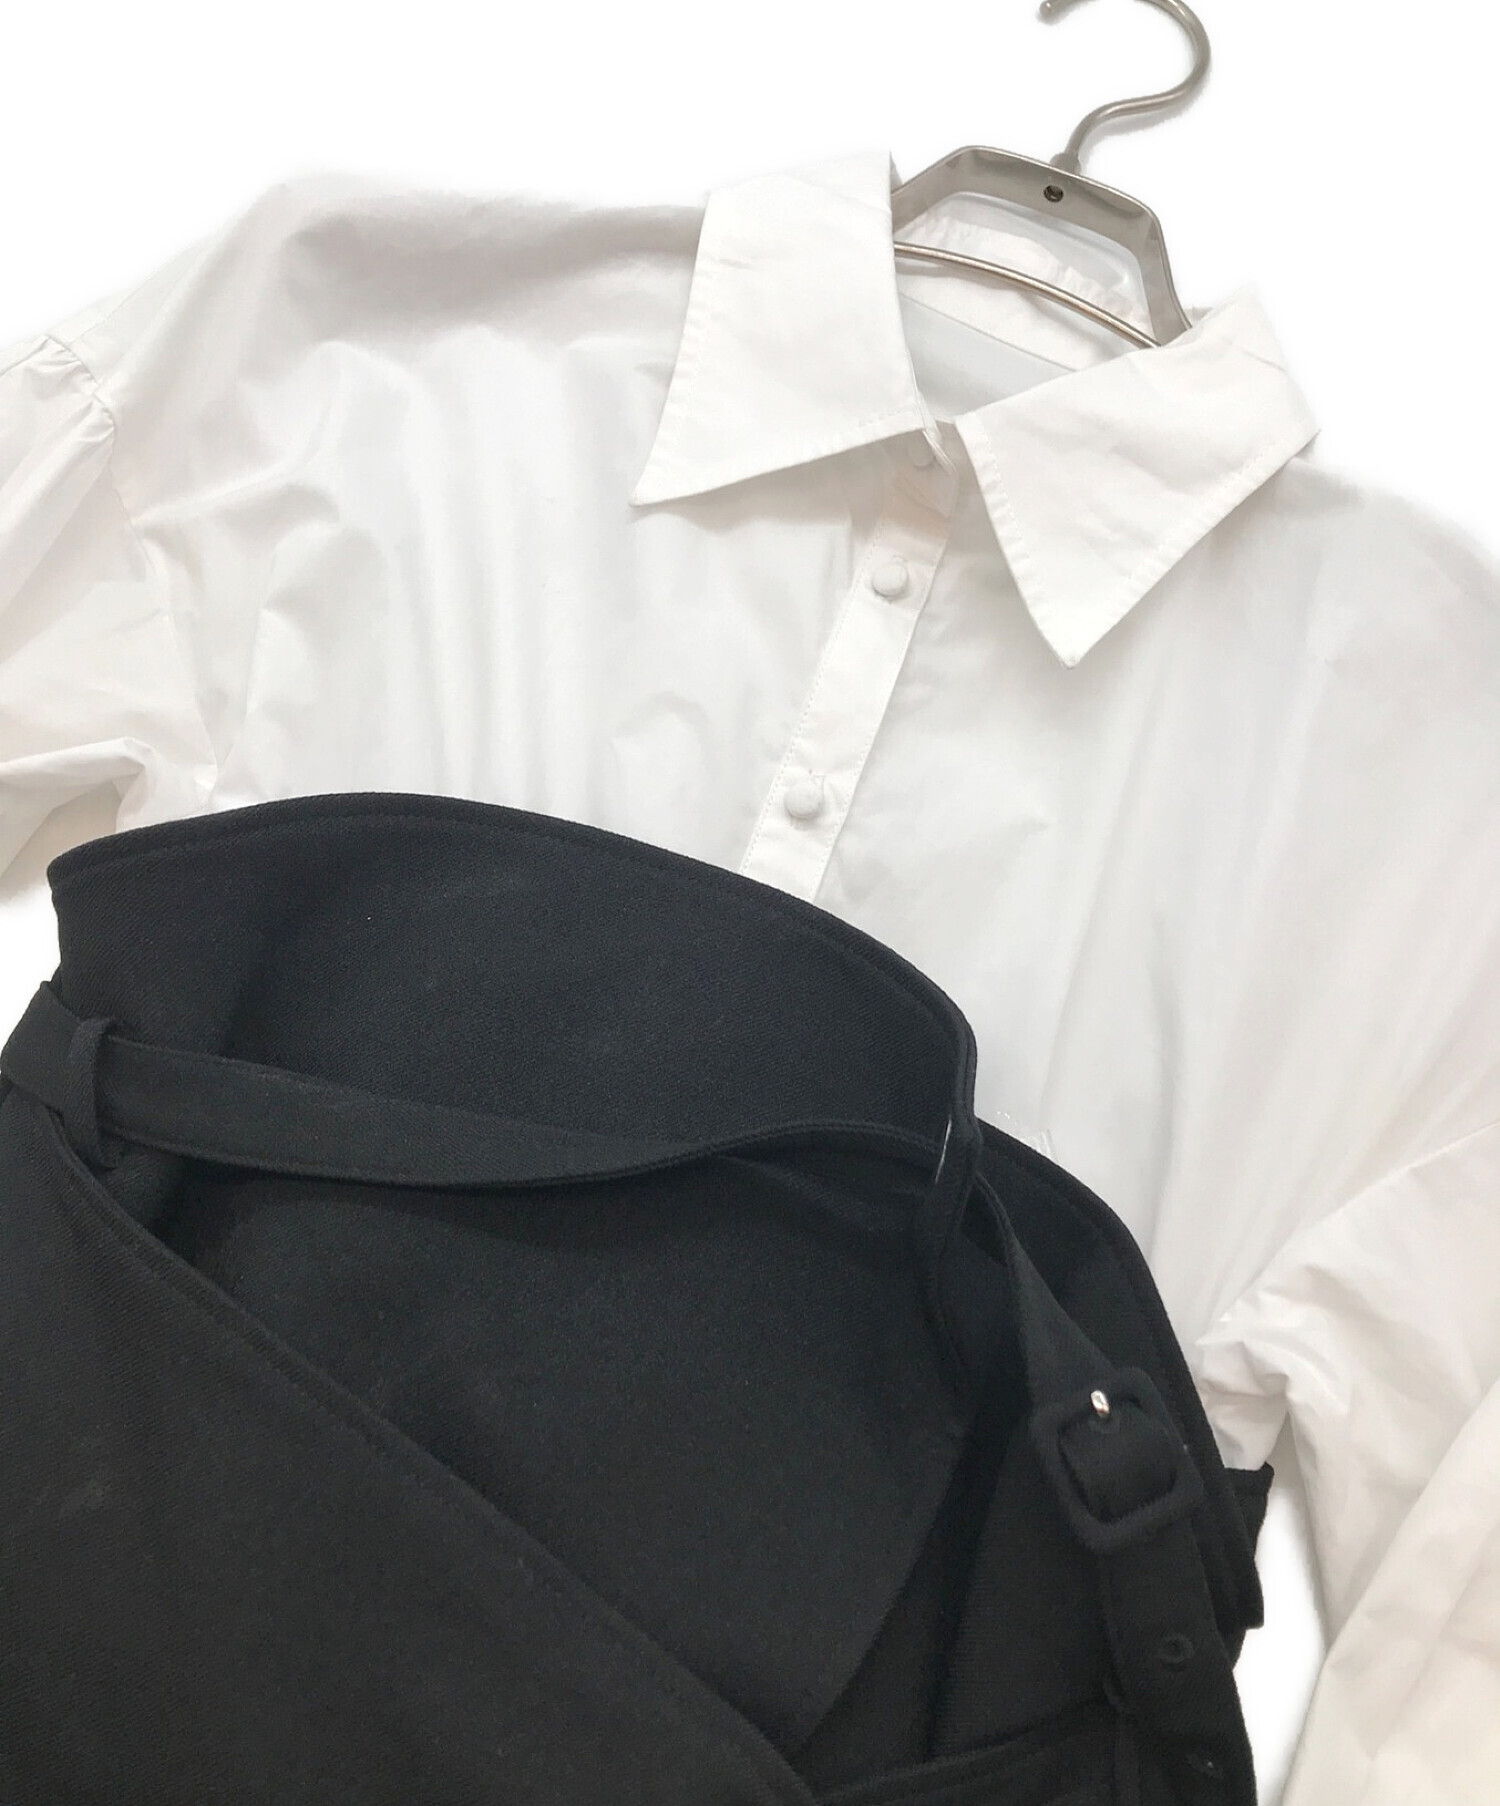 Ameri (アメリ) MILLEFEUILLE SHIRT DRESS/ミルフィーユ シャツ ドレス ホワイト×ブラック サイズ:S